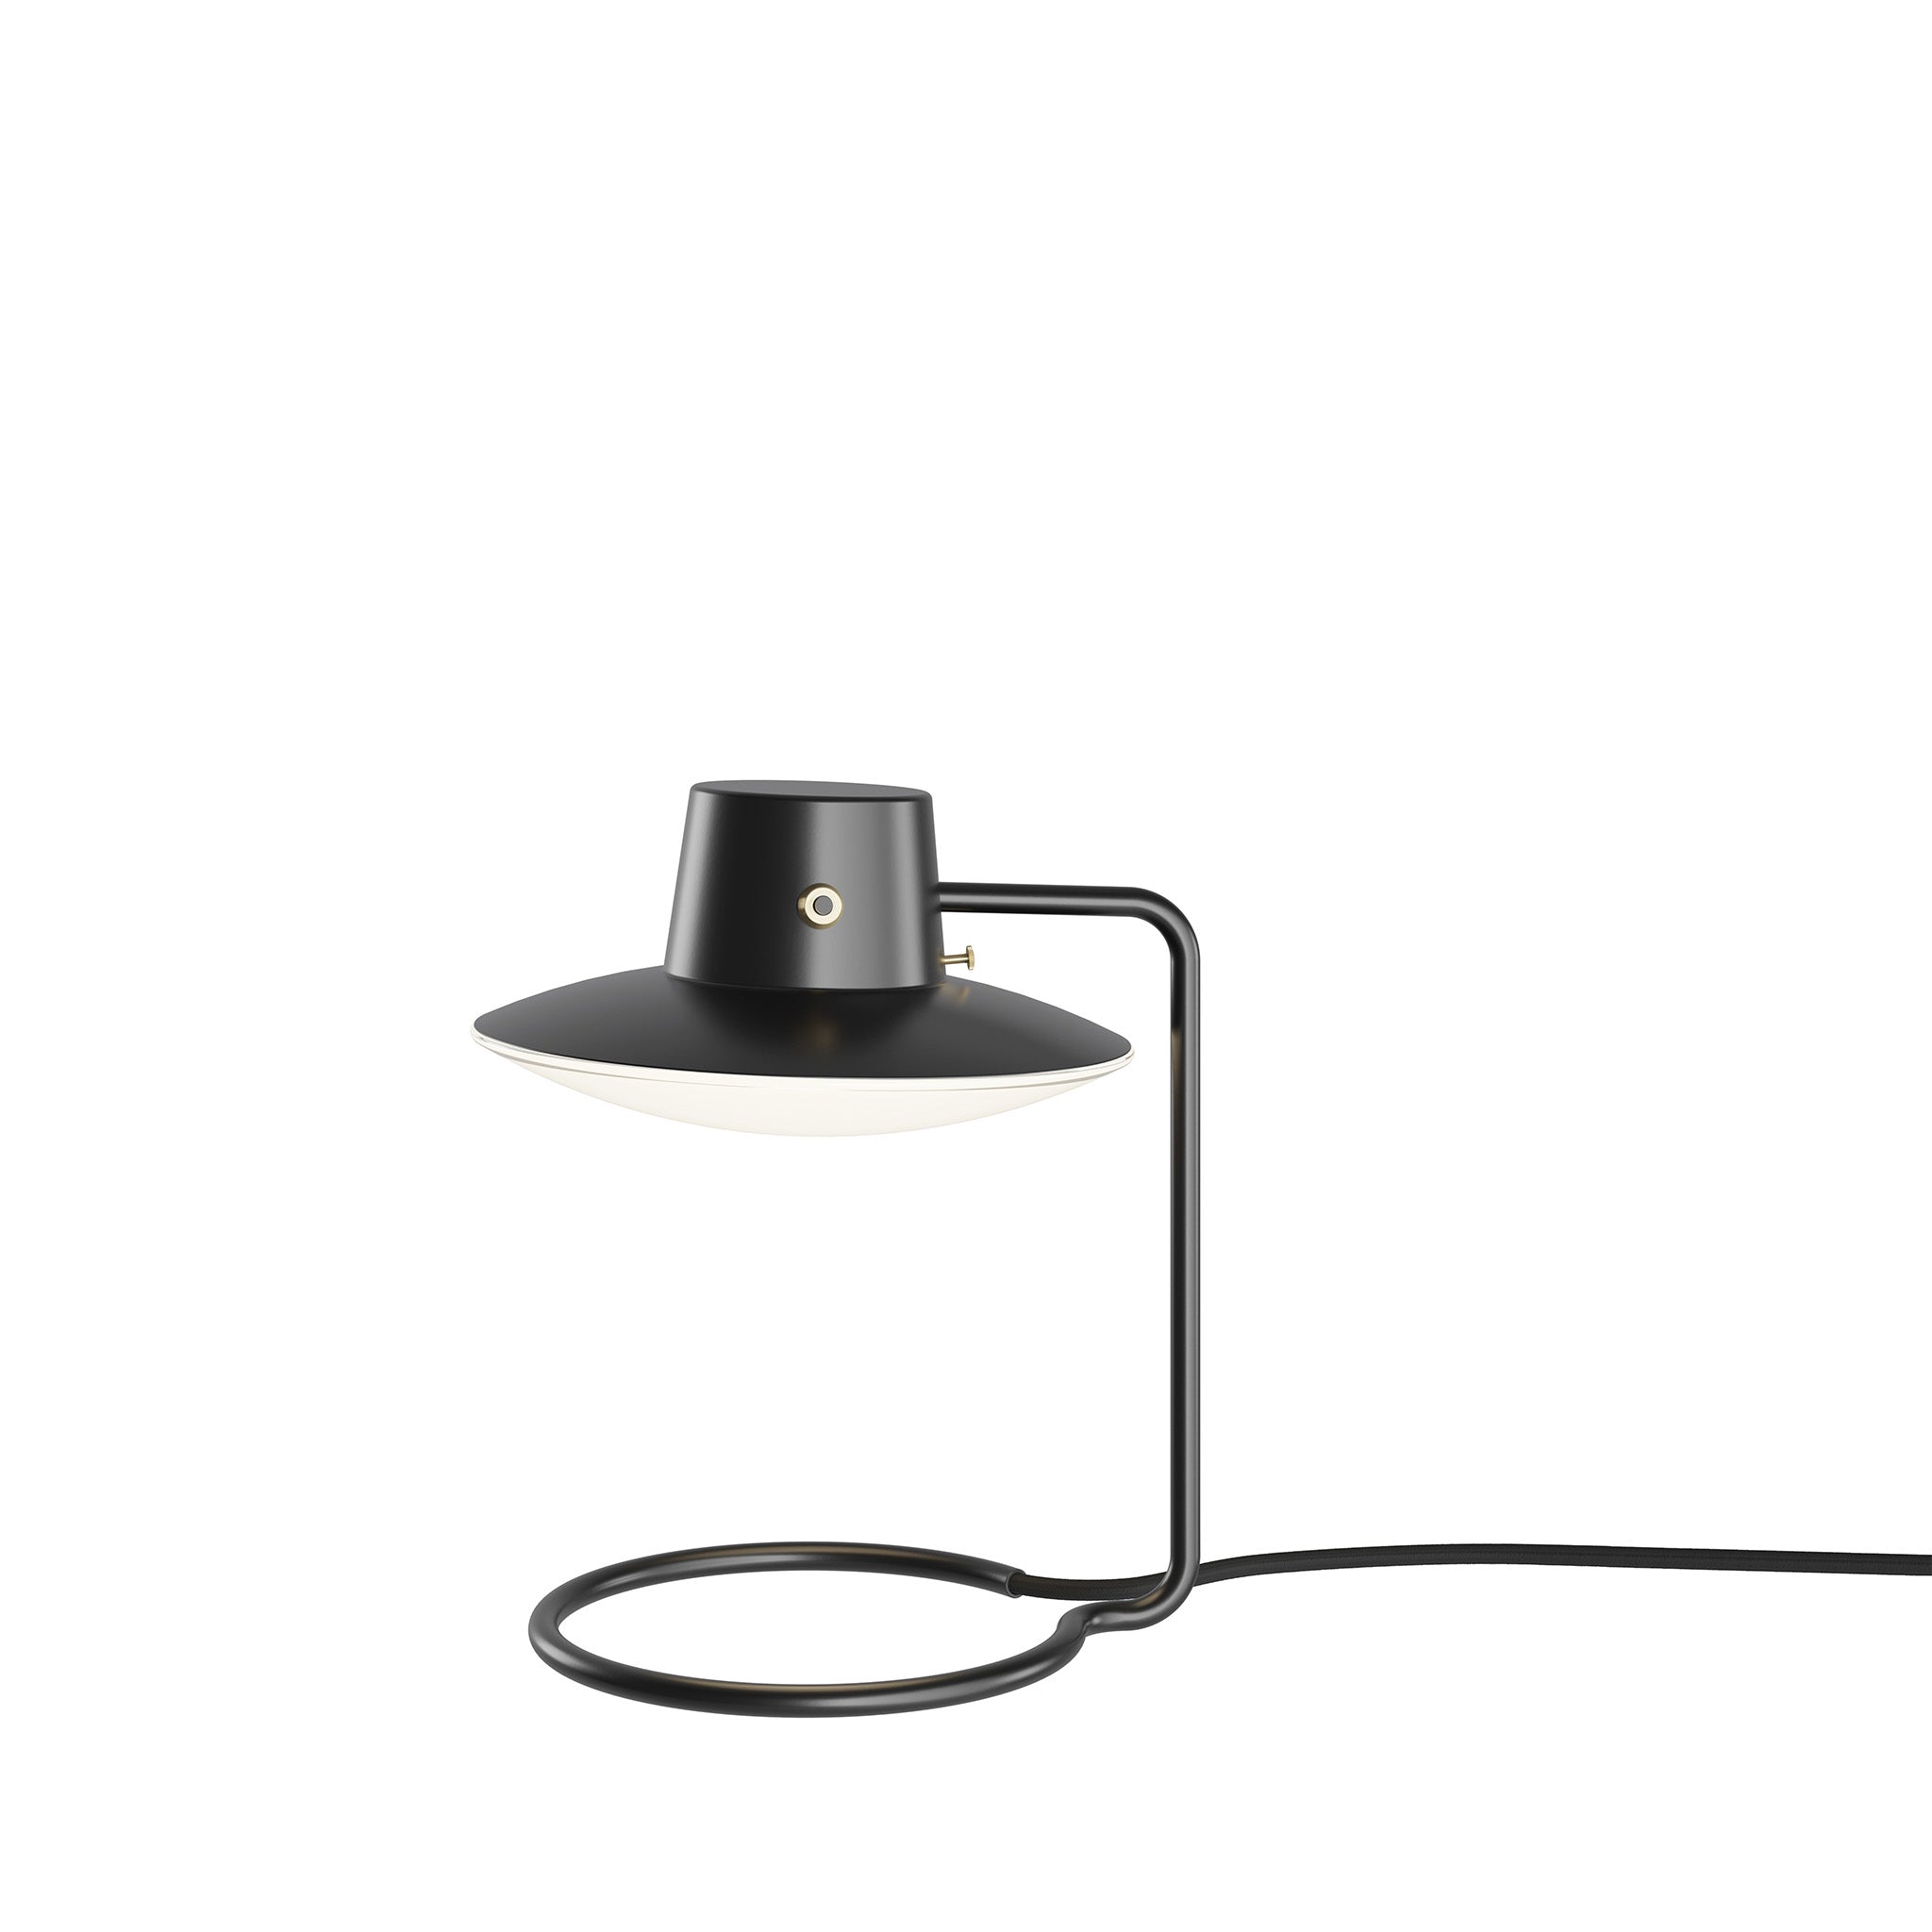 AJ Oxford Table Lamp By Arne Jacobsen for Louis Poulsen